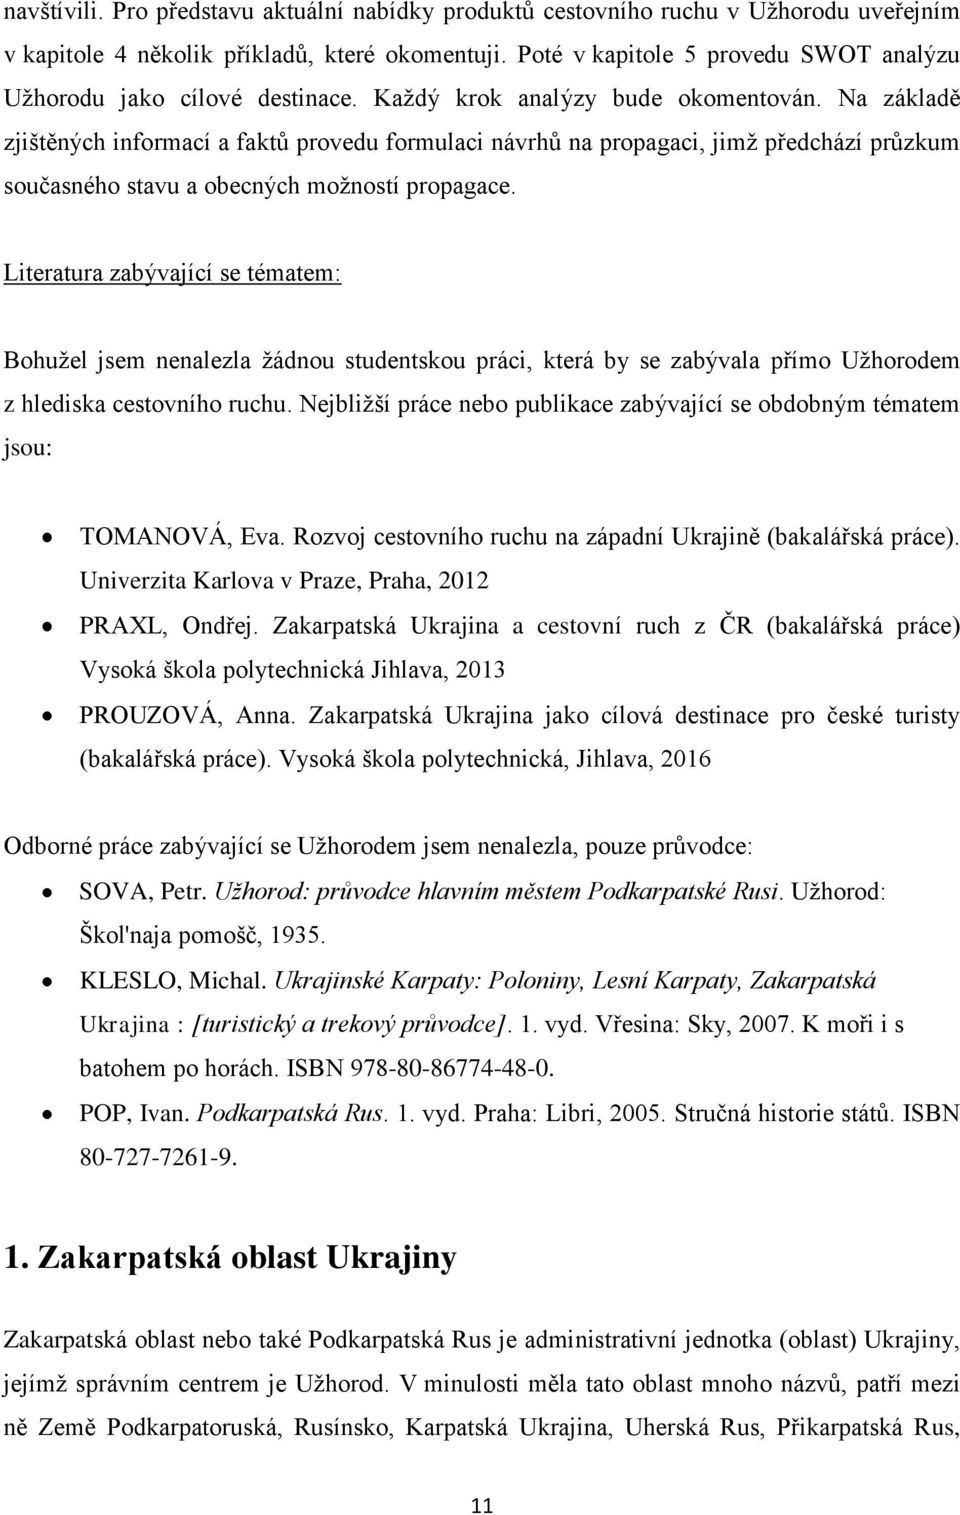 Seznamovací agentury ve lvovské ukrajině